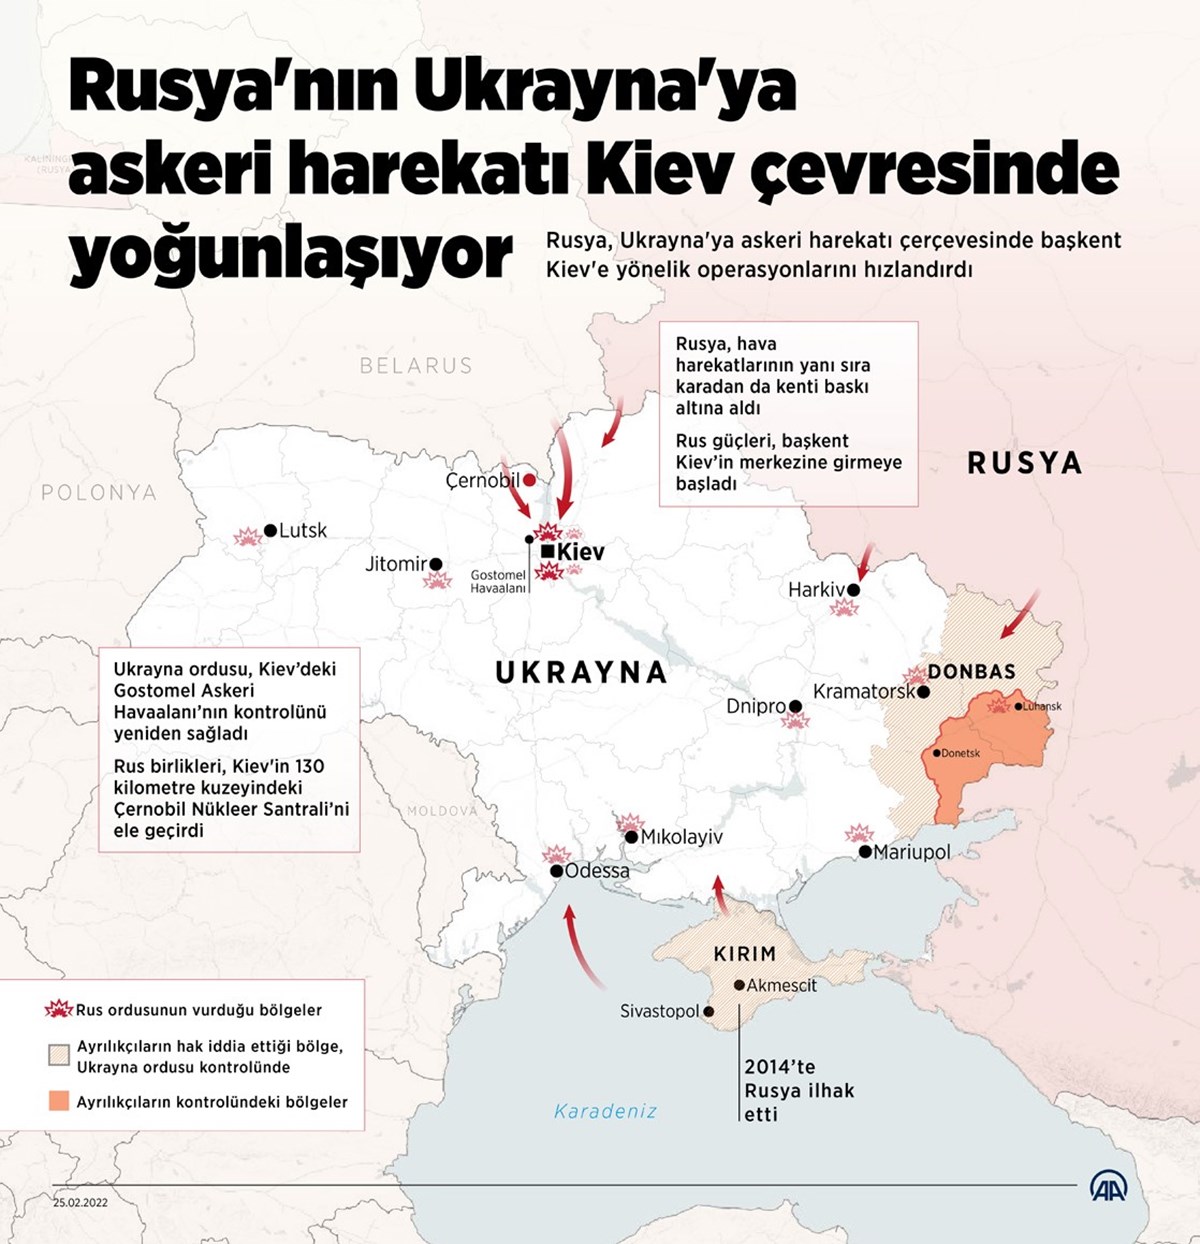 Rus birliklerinin konuşlandığı bölgeler.